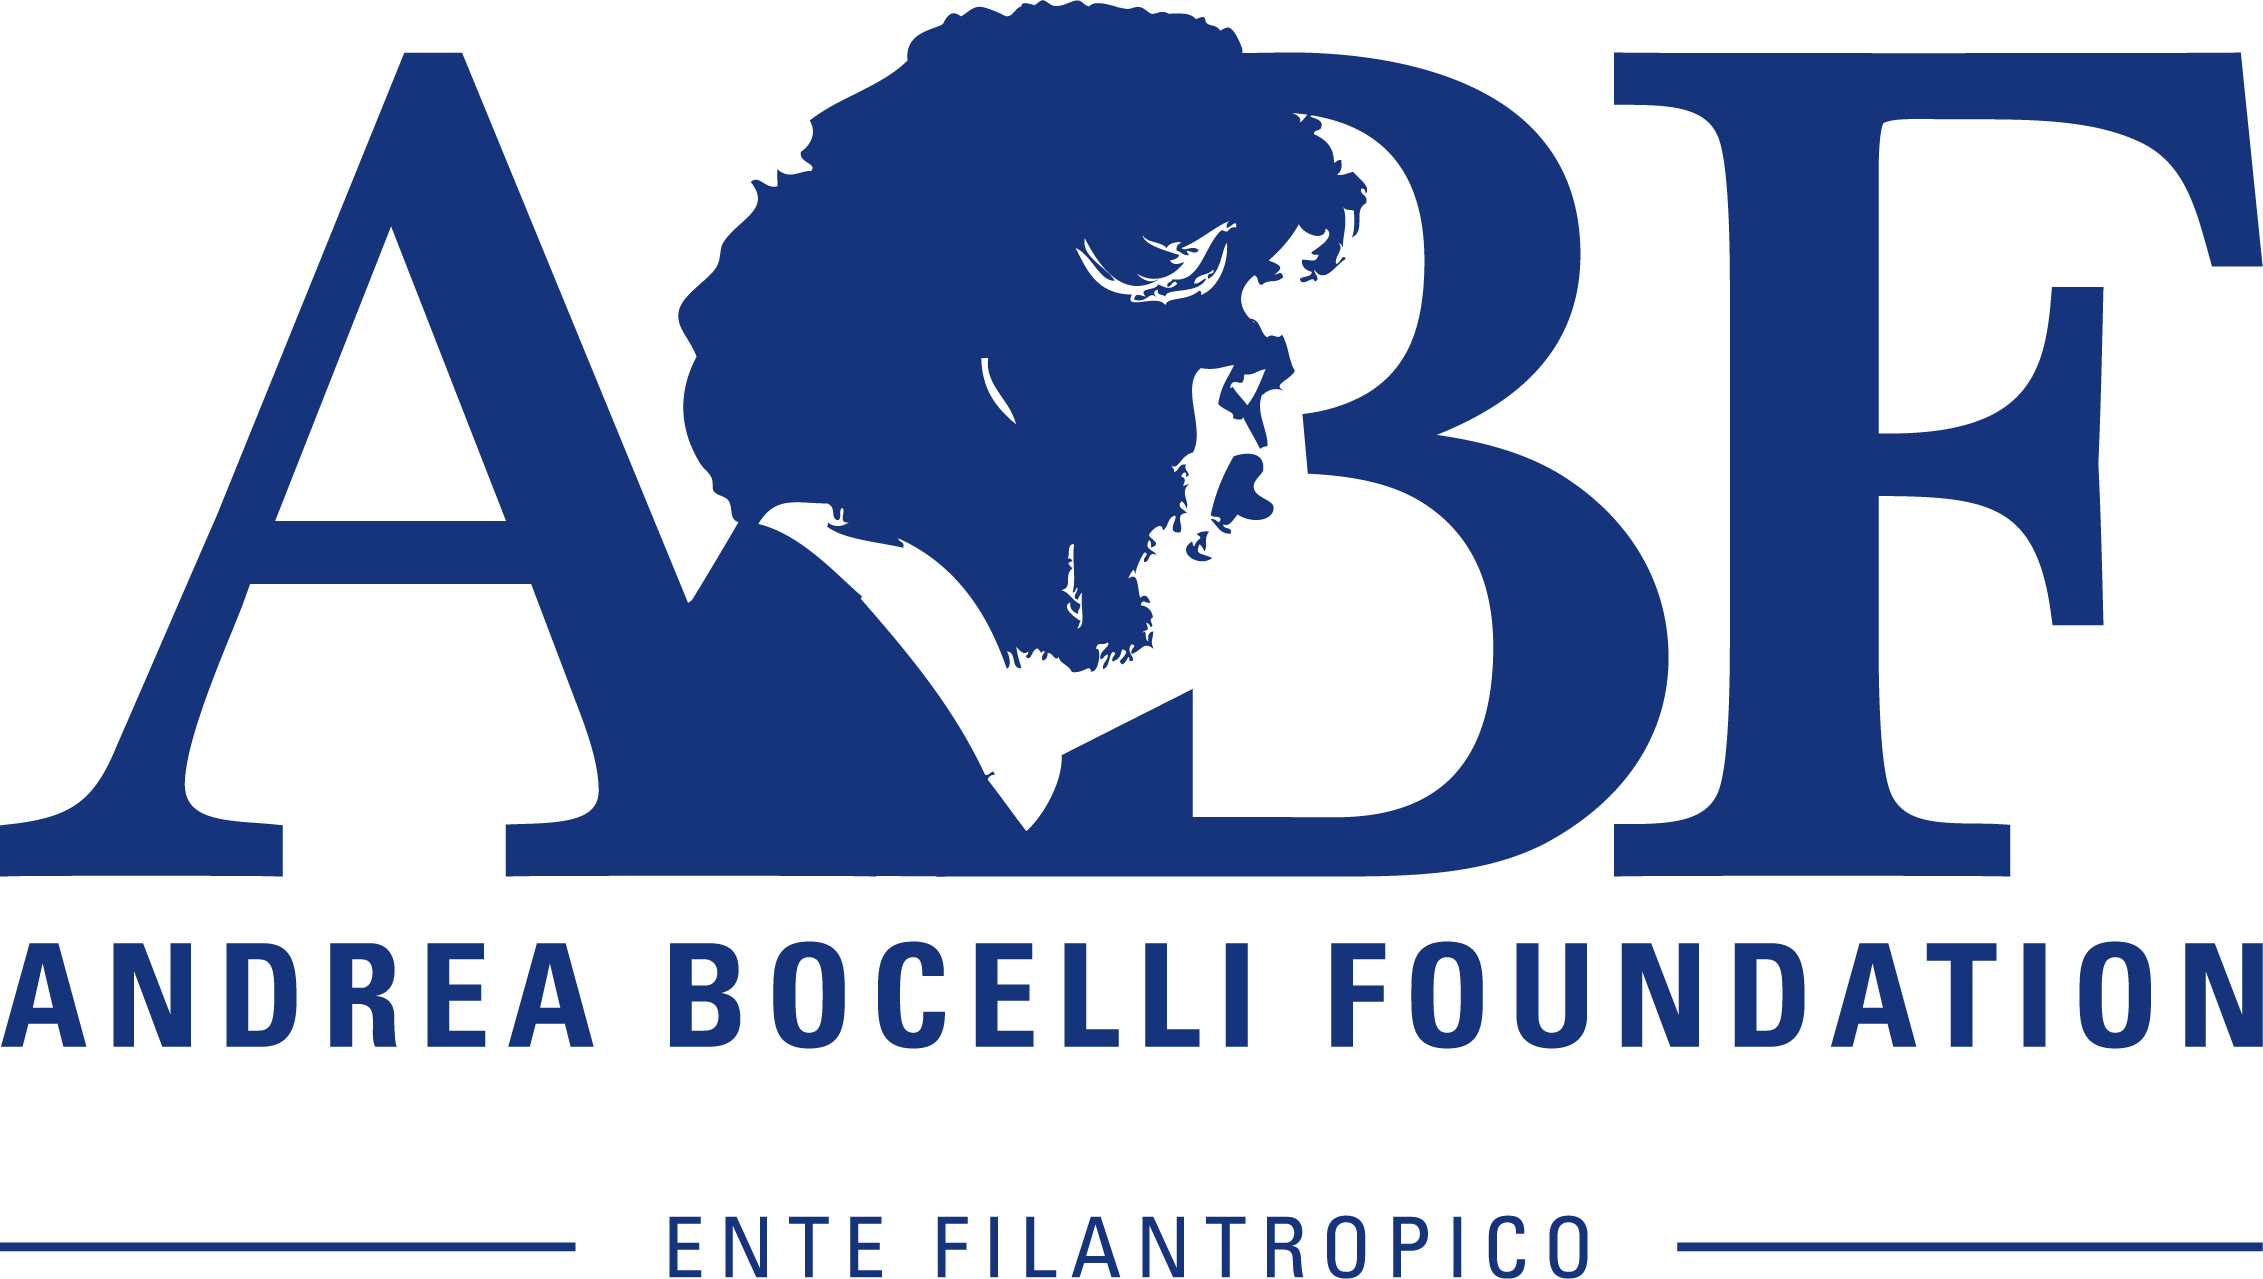 Andrea Bocelli Foundation